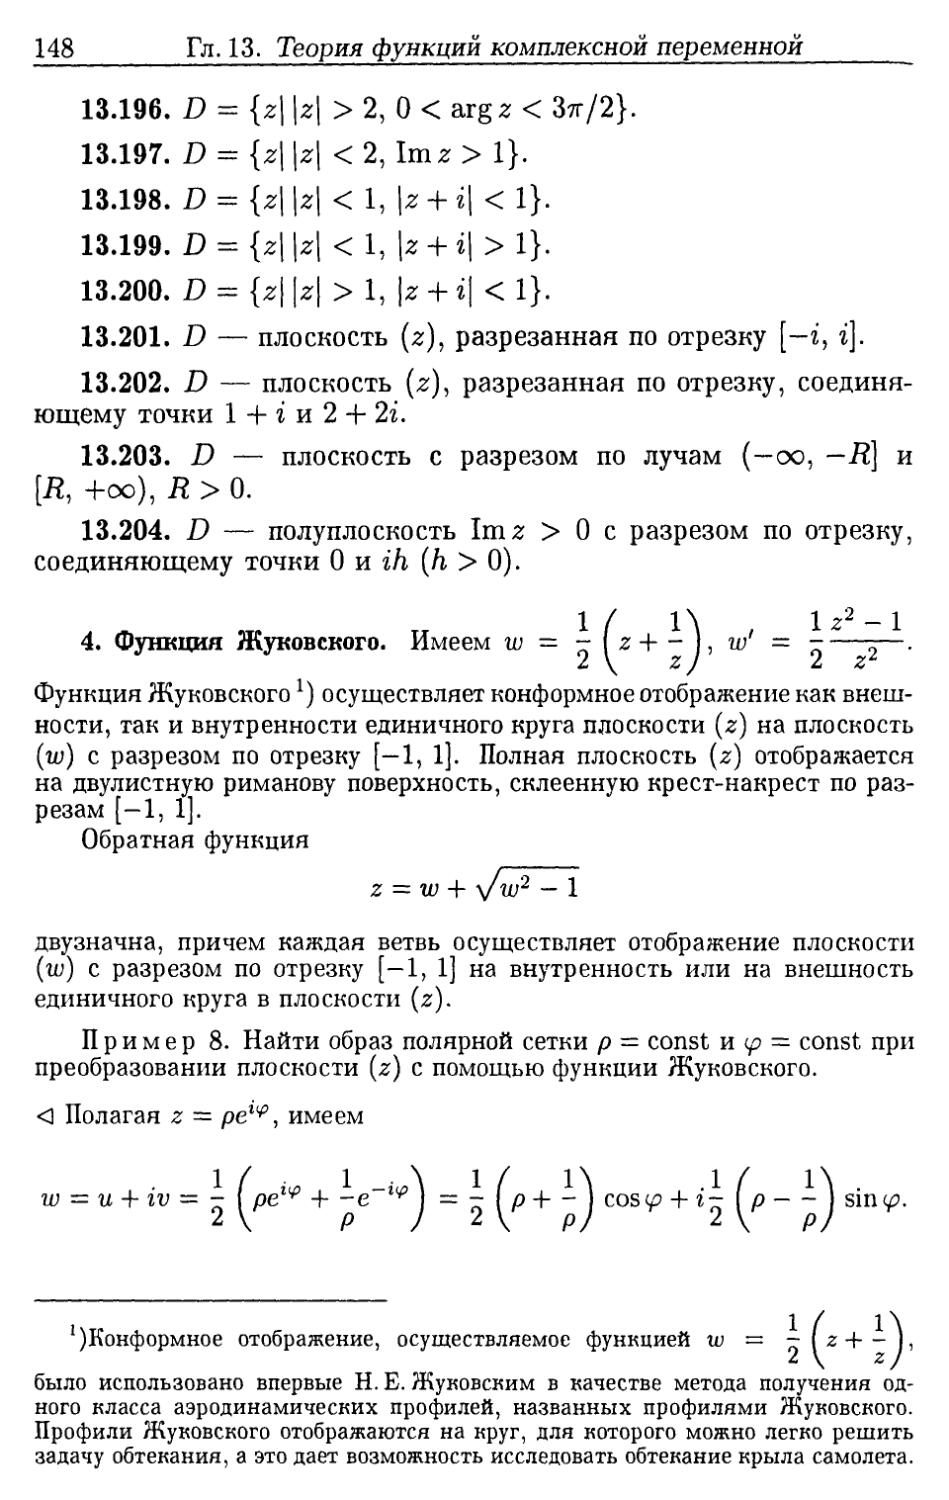 4. Функция Жуковского